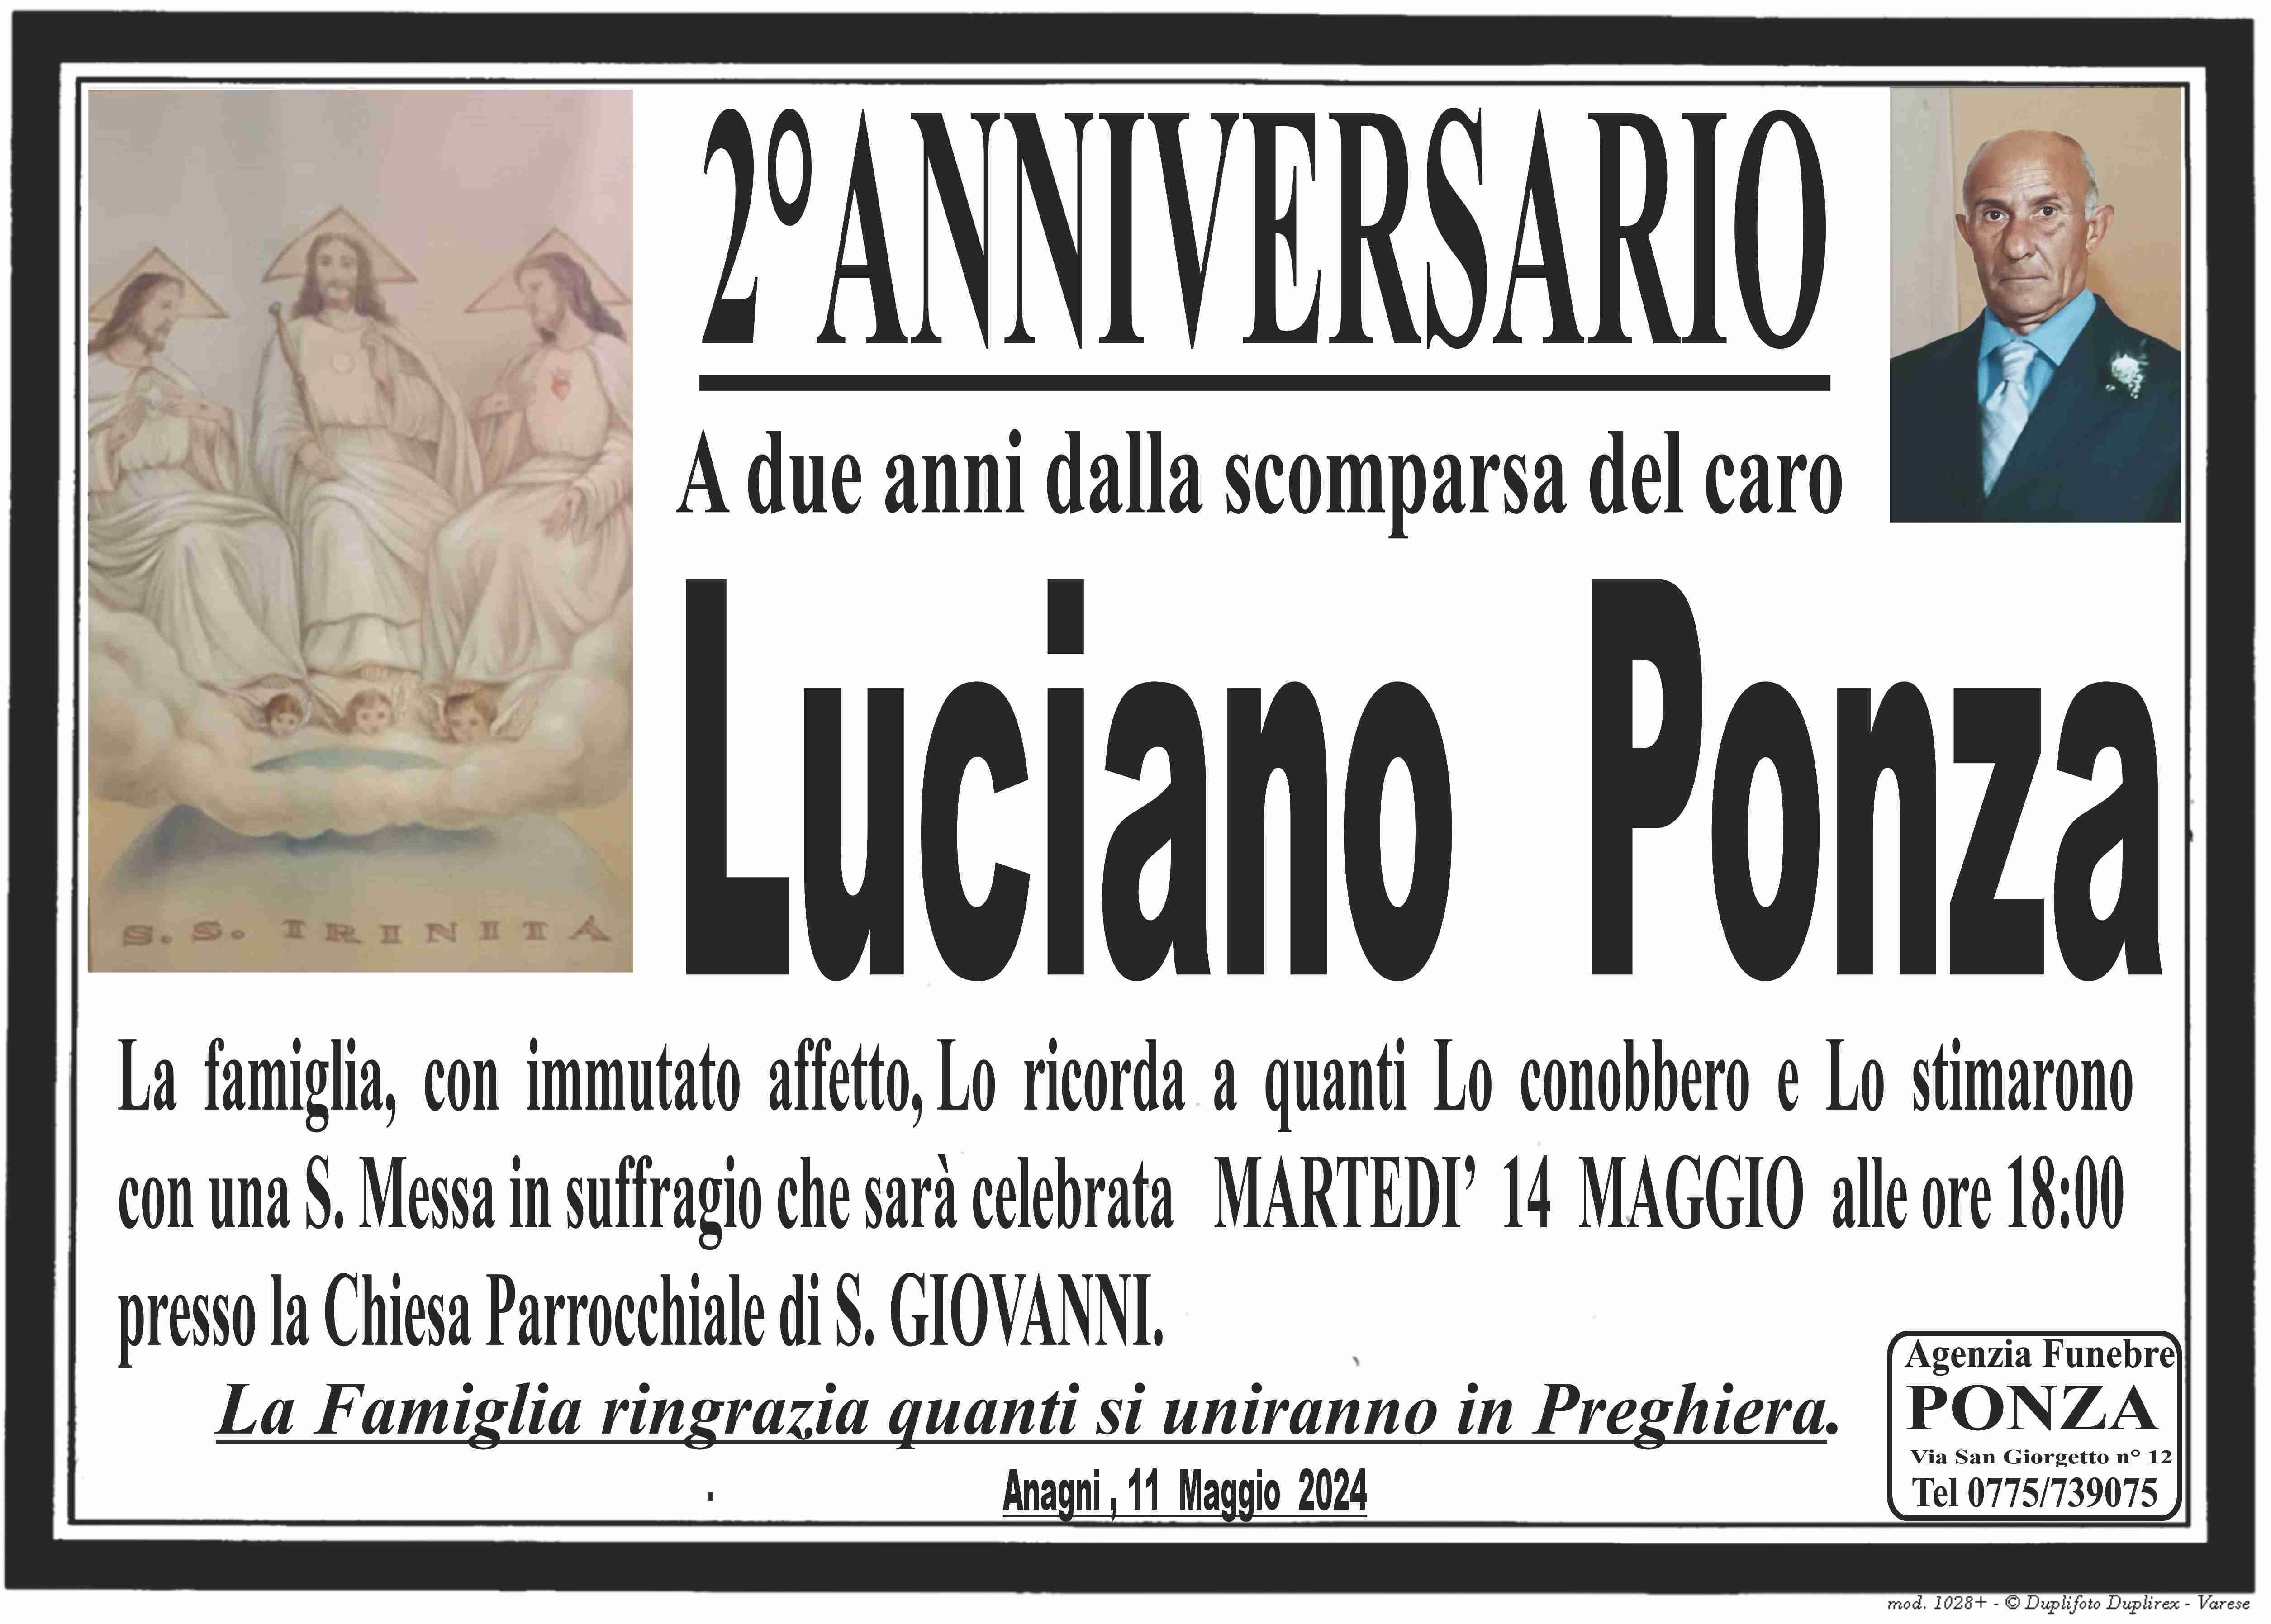 Luciano Ponza